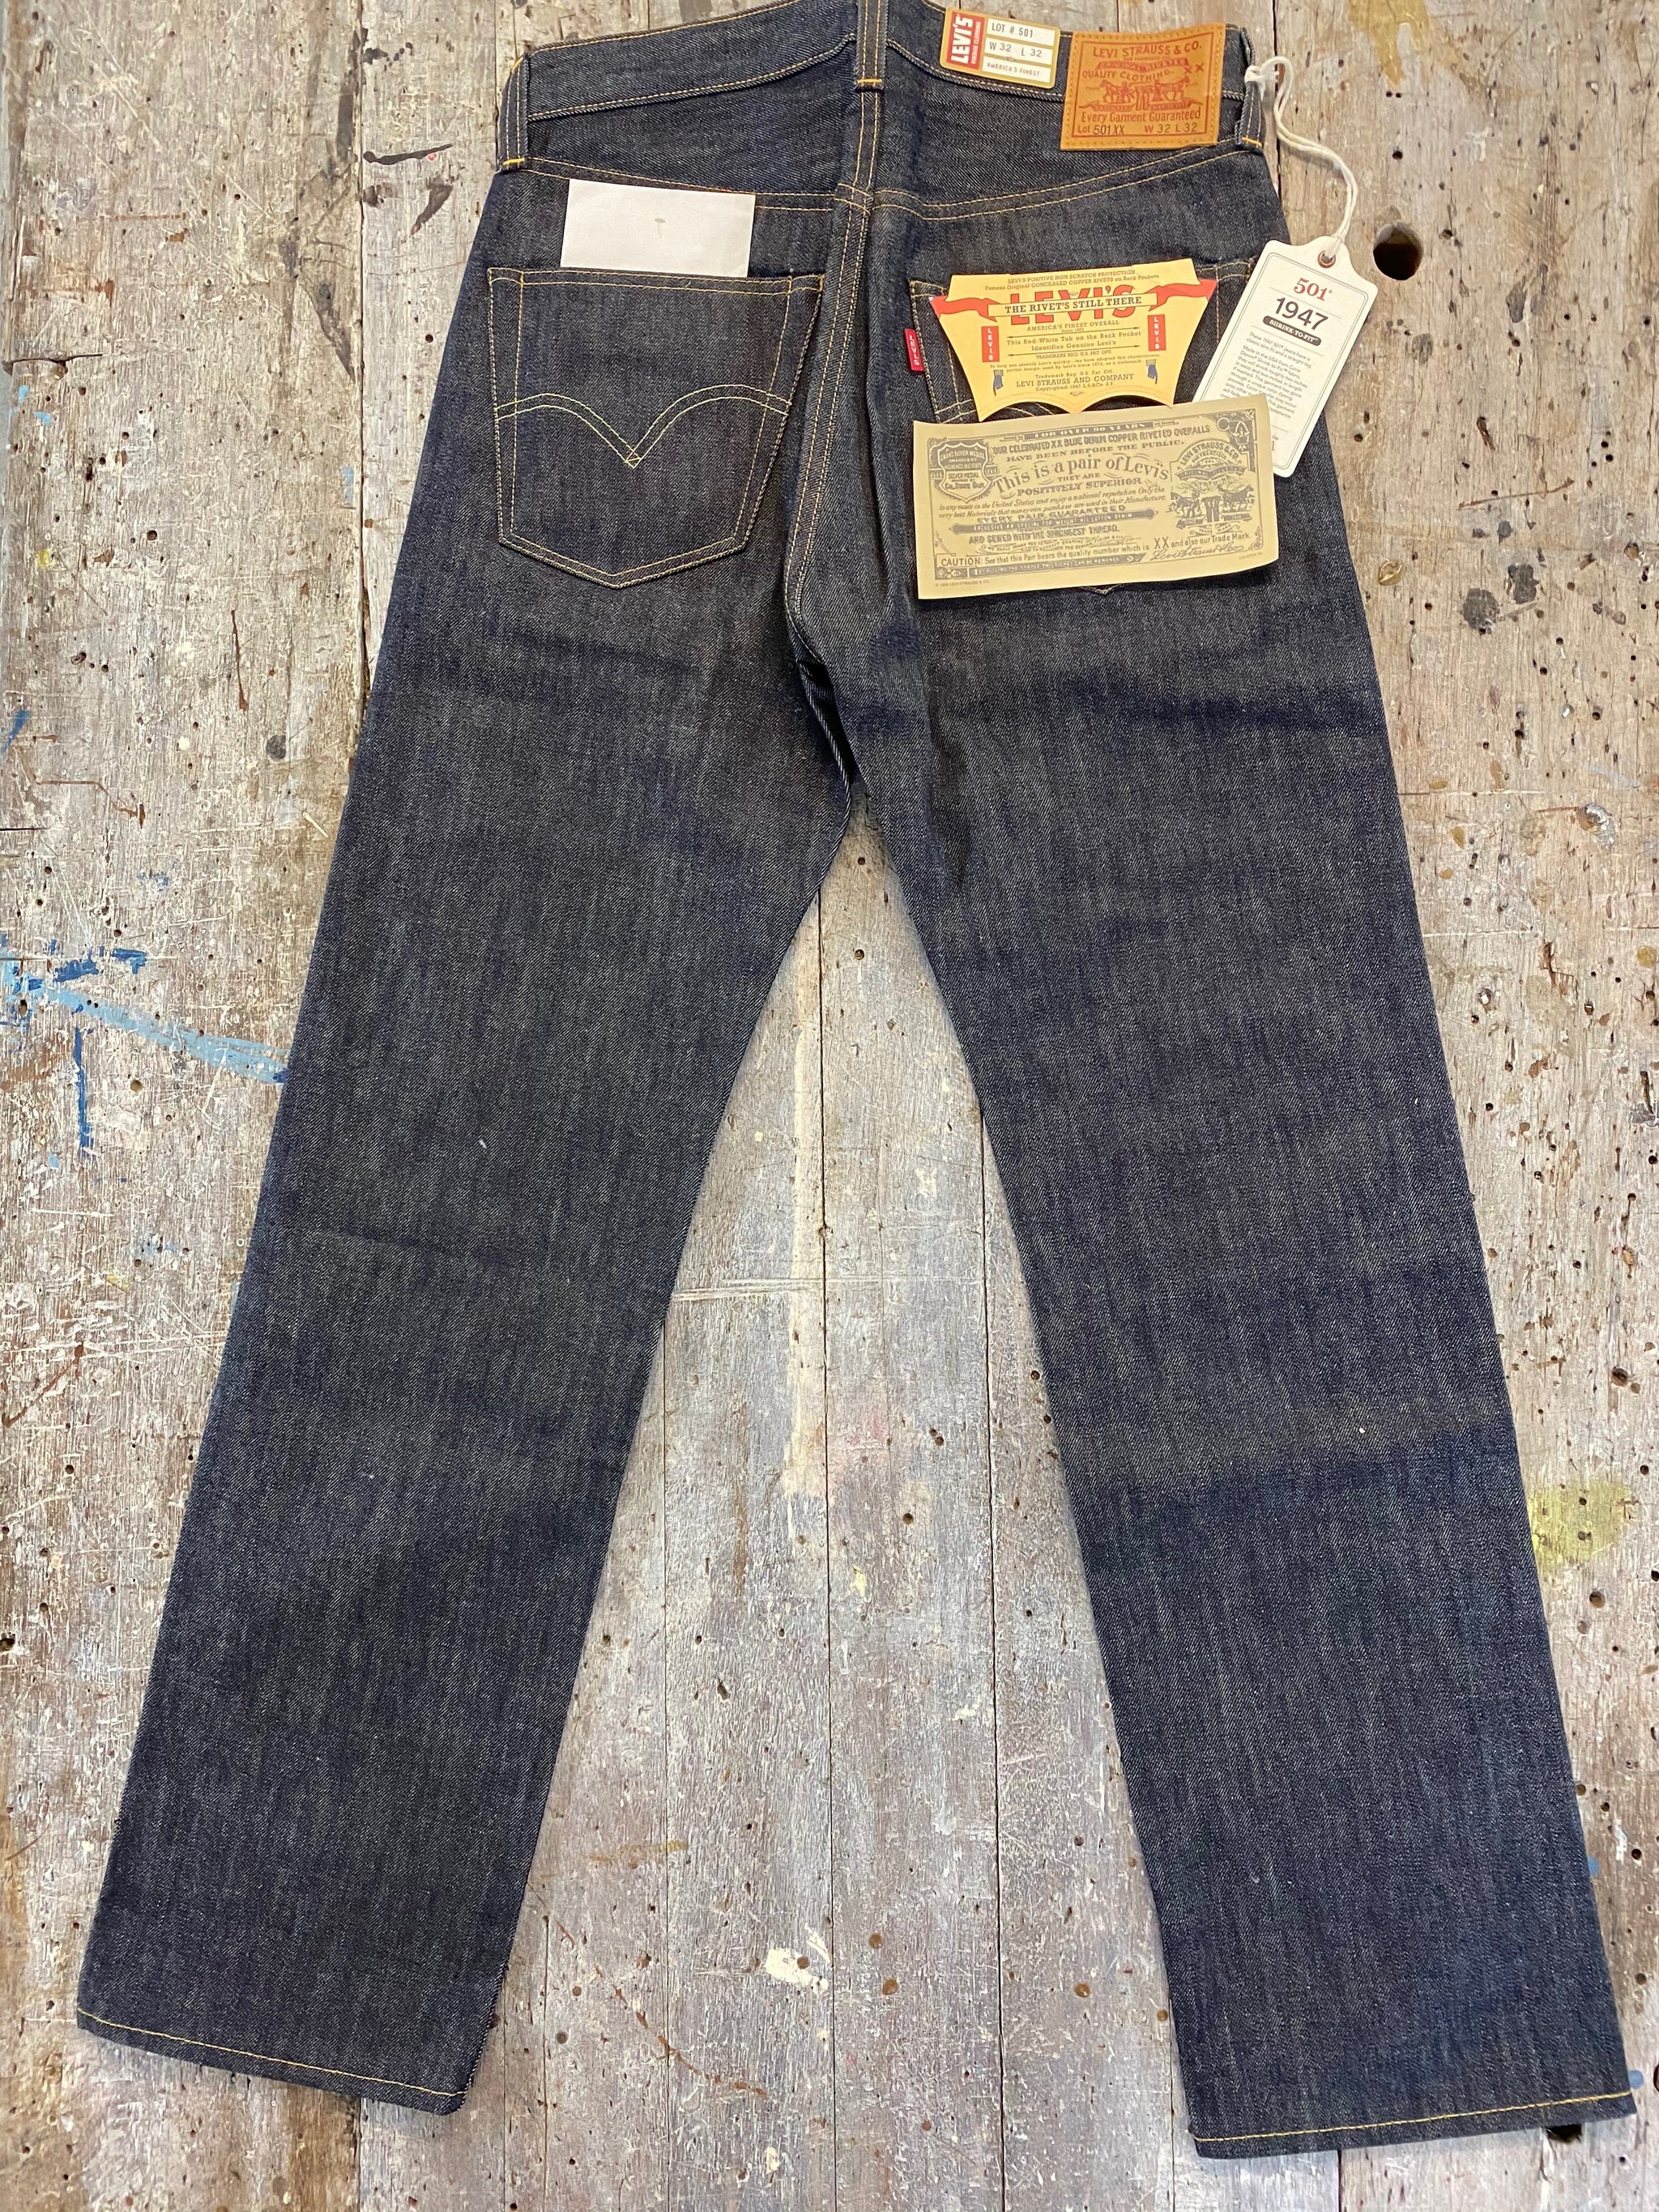 LVC 1966 501xx Customized Smokey Jean – JEFFREY MARK